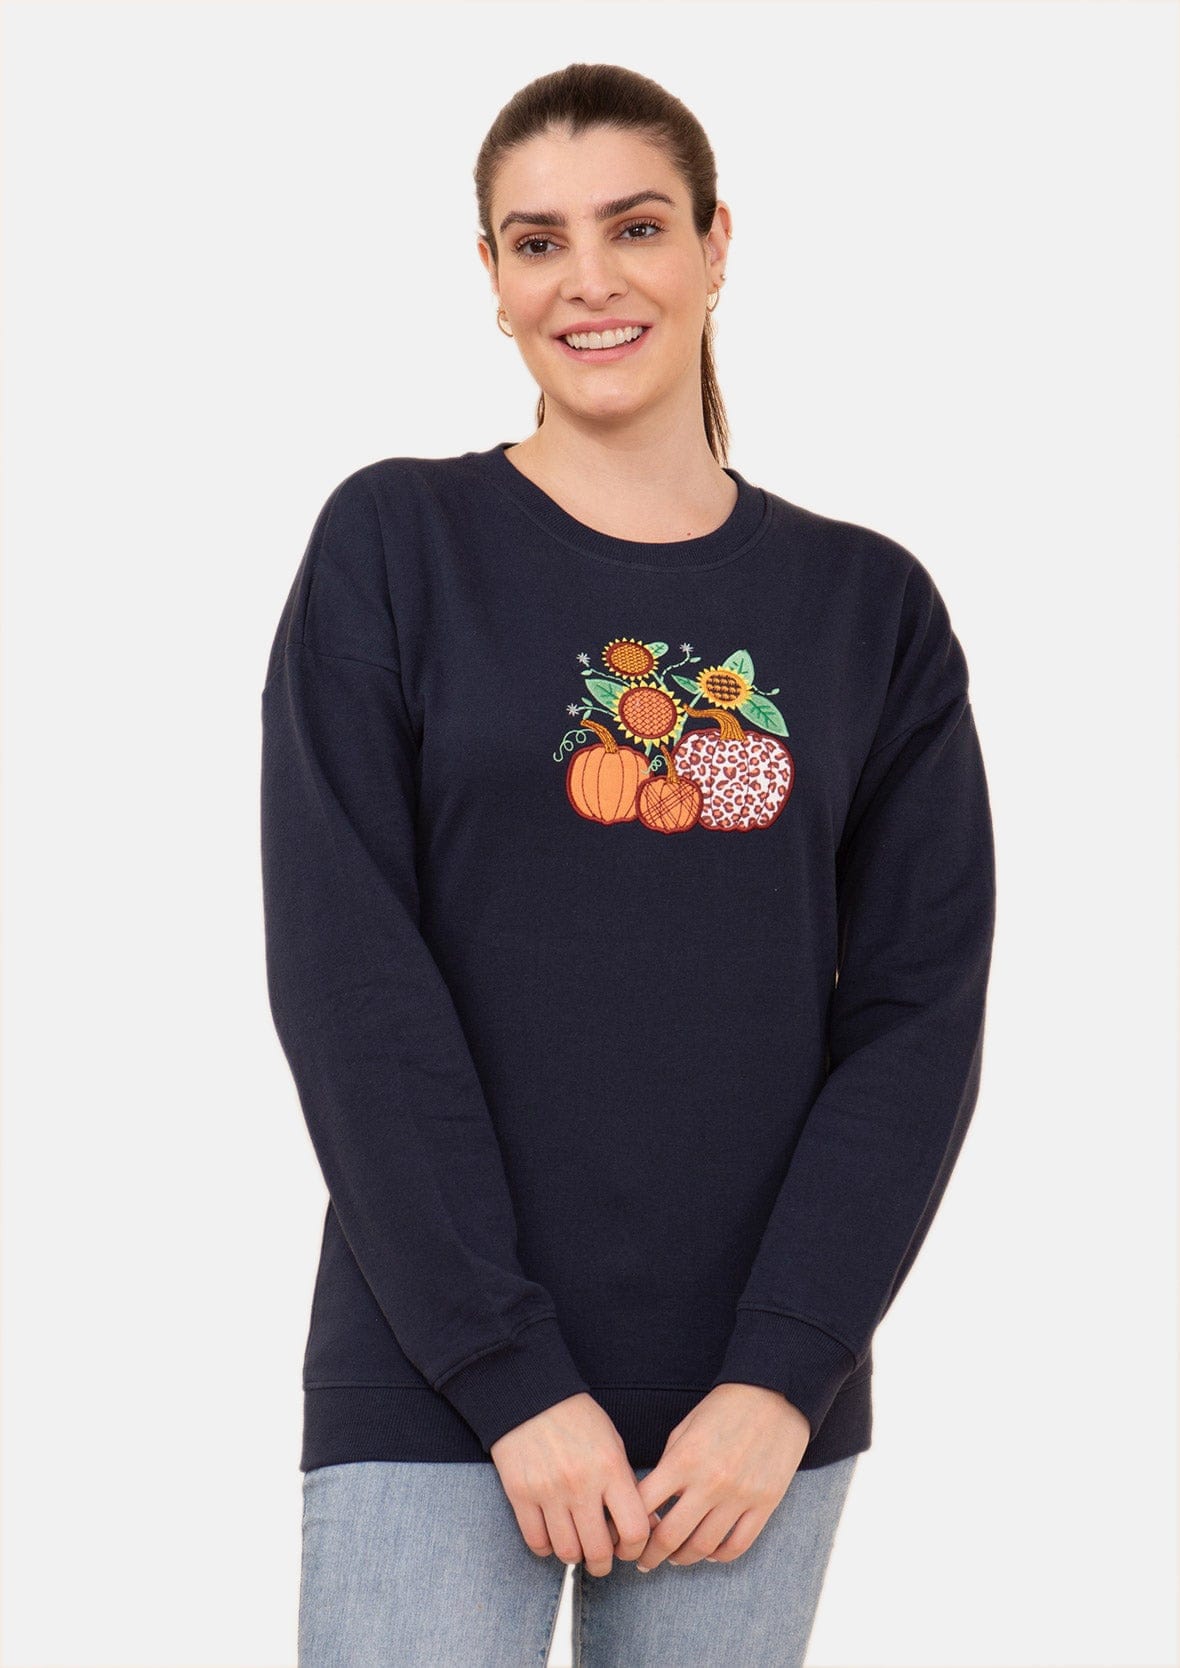 Pumpkin Applique Holiday Sweatshirt